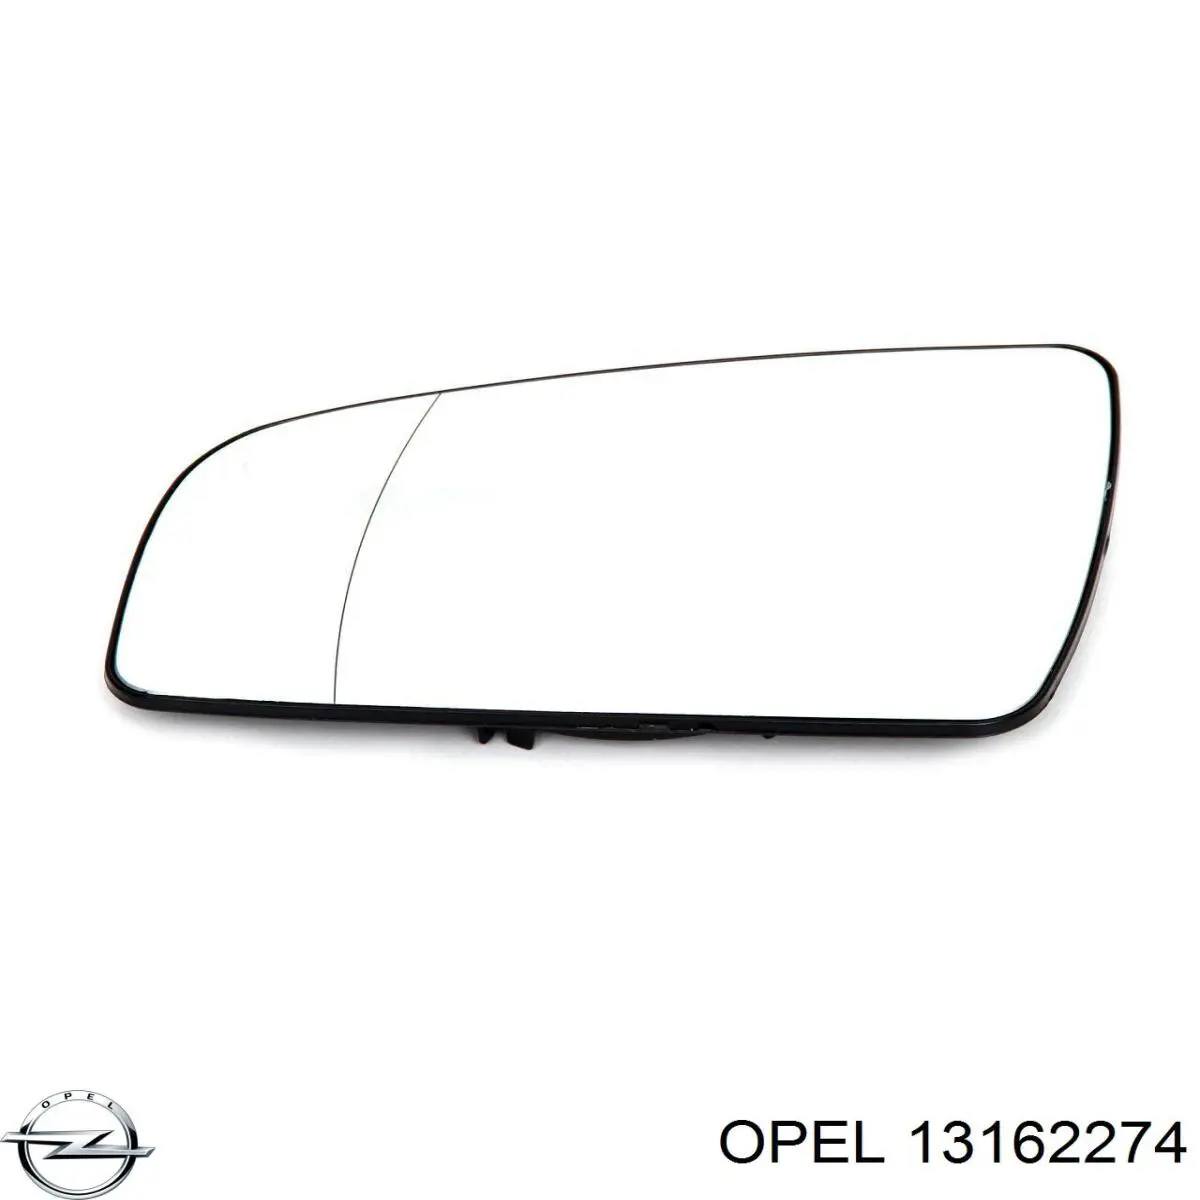 13162274 Opel зеркальный элемент зеркала заднего вида левого